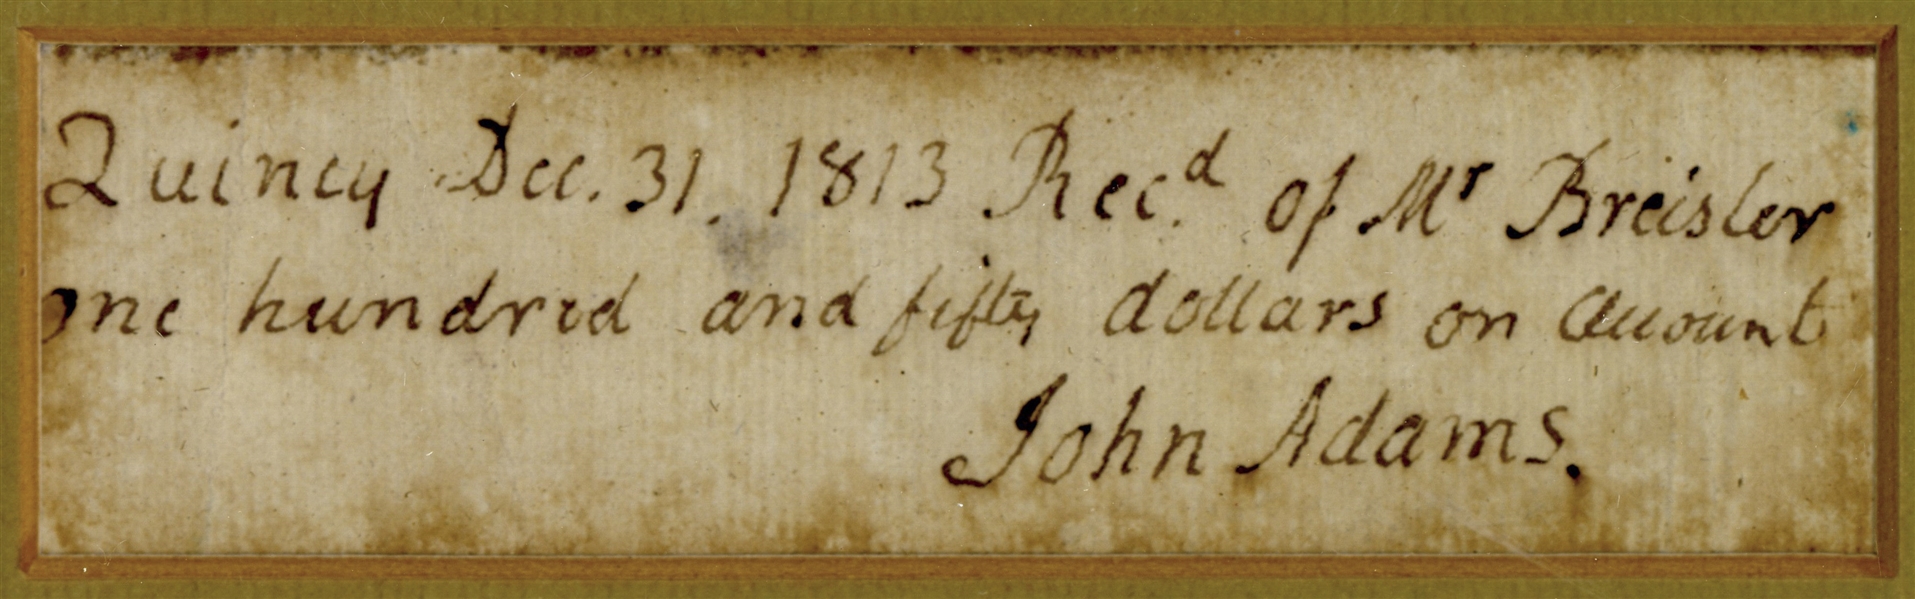 John Adams Receipt Signed -- With Full ''John Adams'' Signature